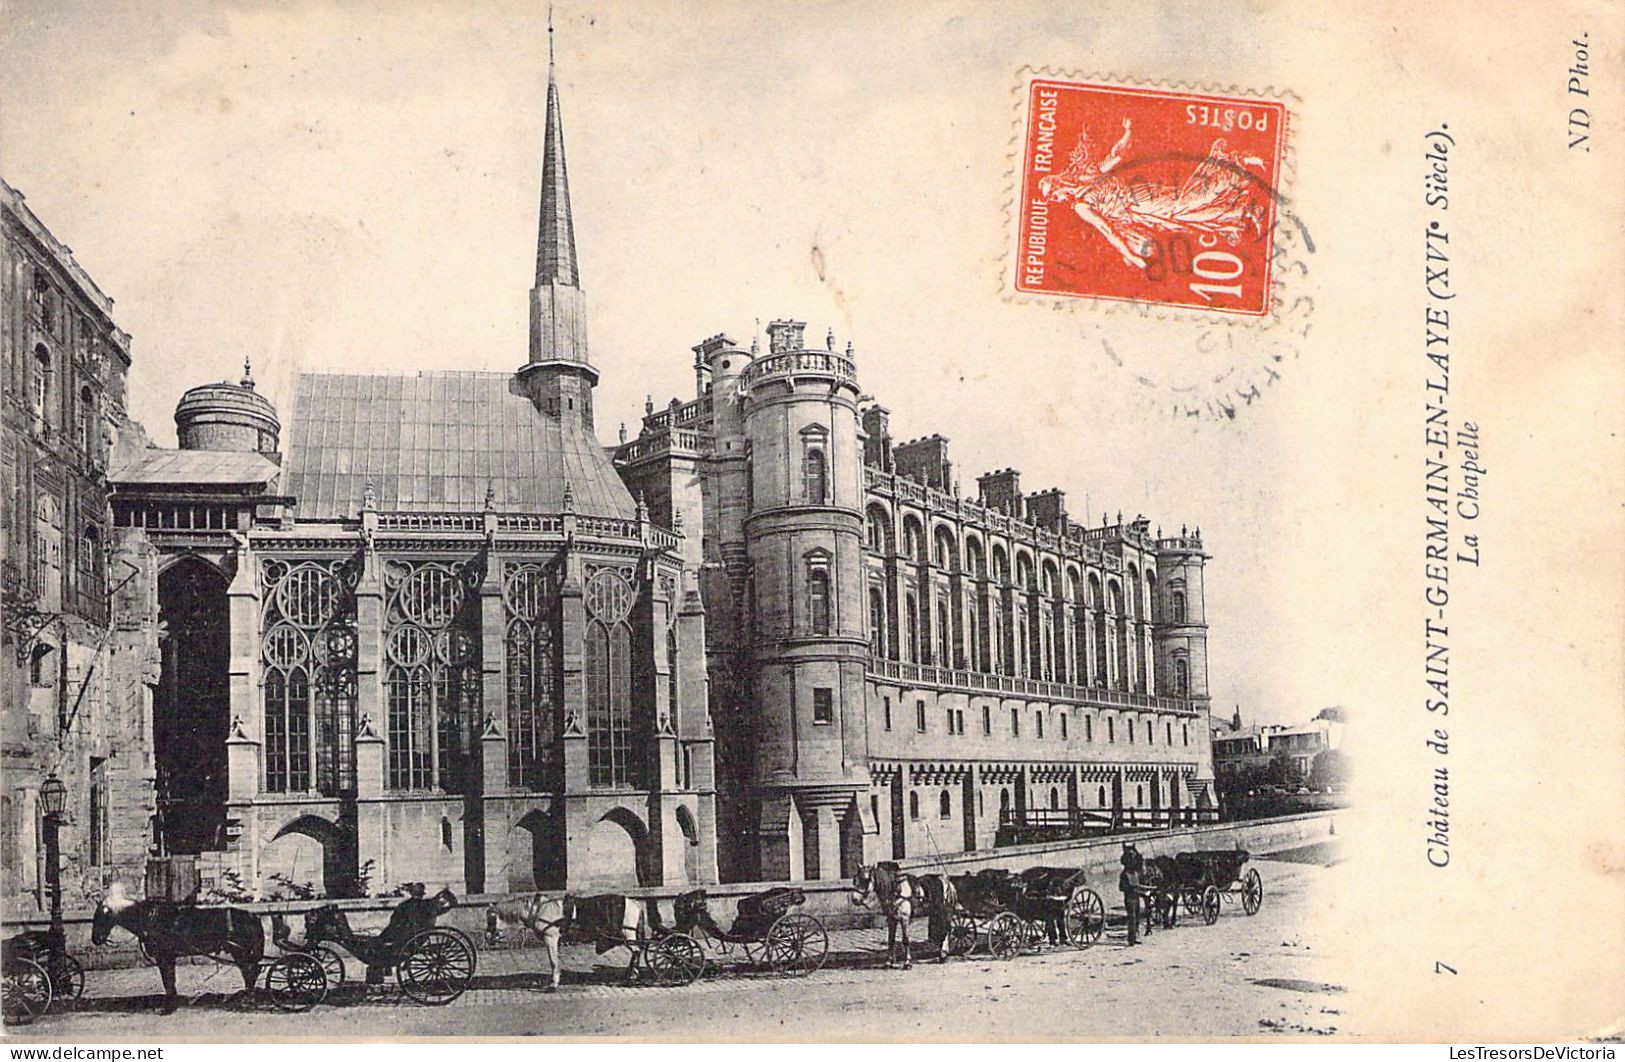 FRANCE - 78 - SAINT GERMAIN EN LAYE - La Chapelle - Carte Postale Ancienne - St. Germain En Laye (Château)